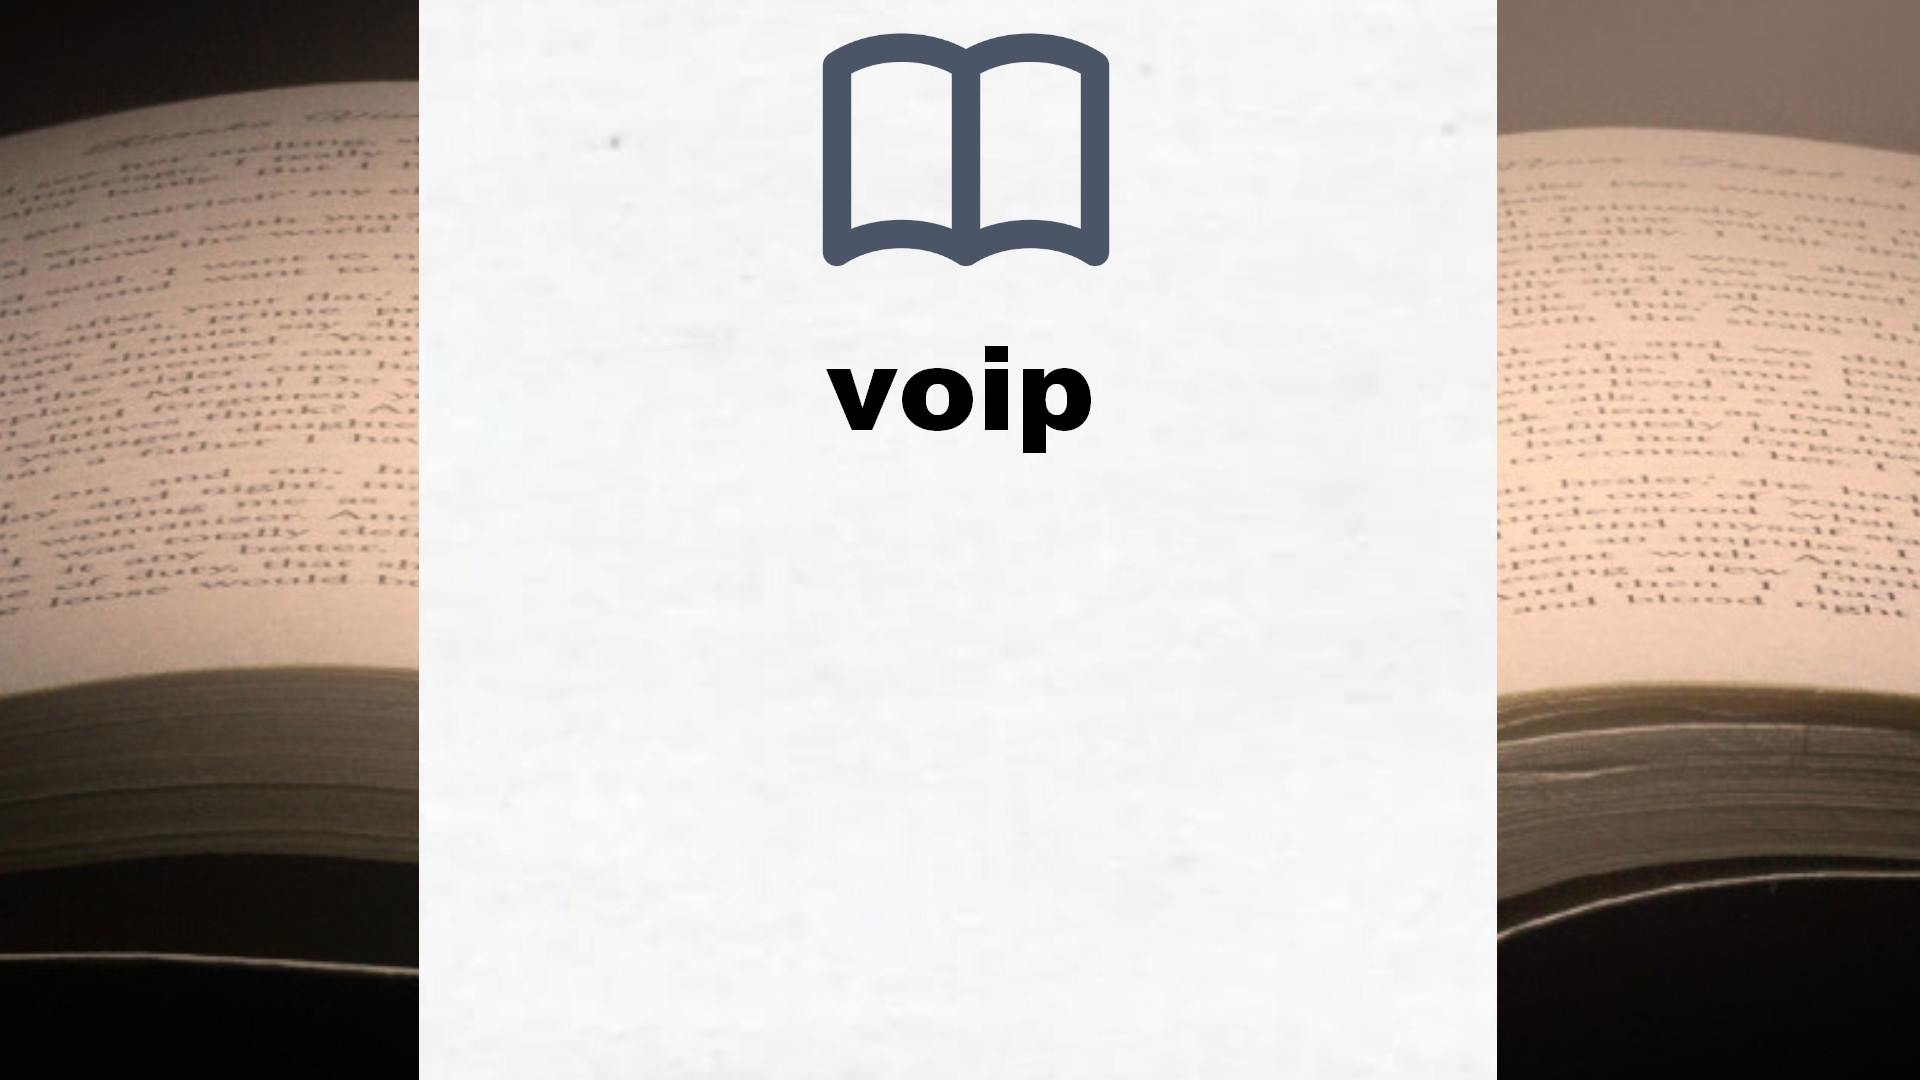 Libros sobre voip